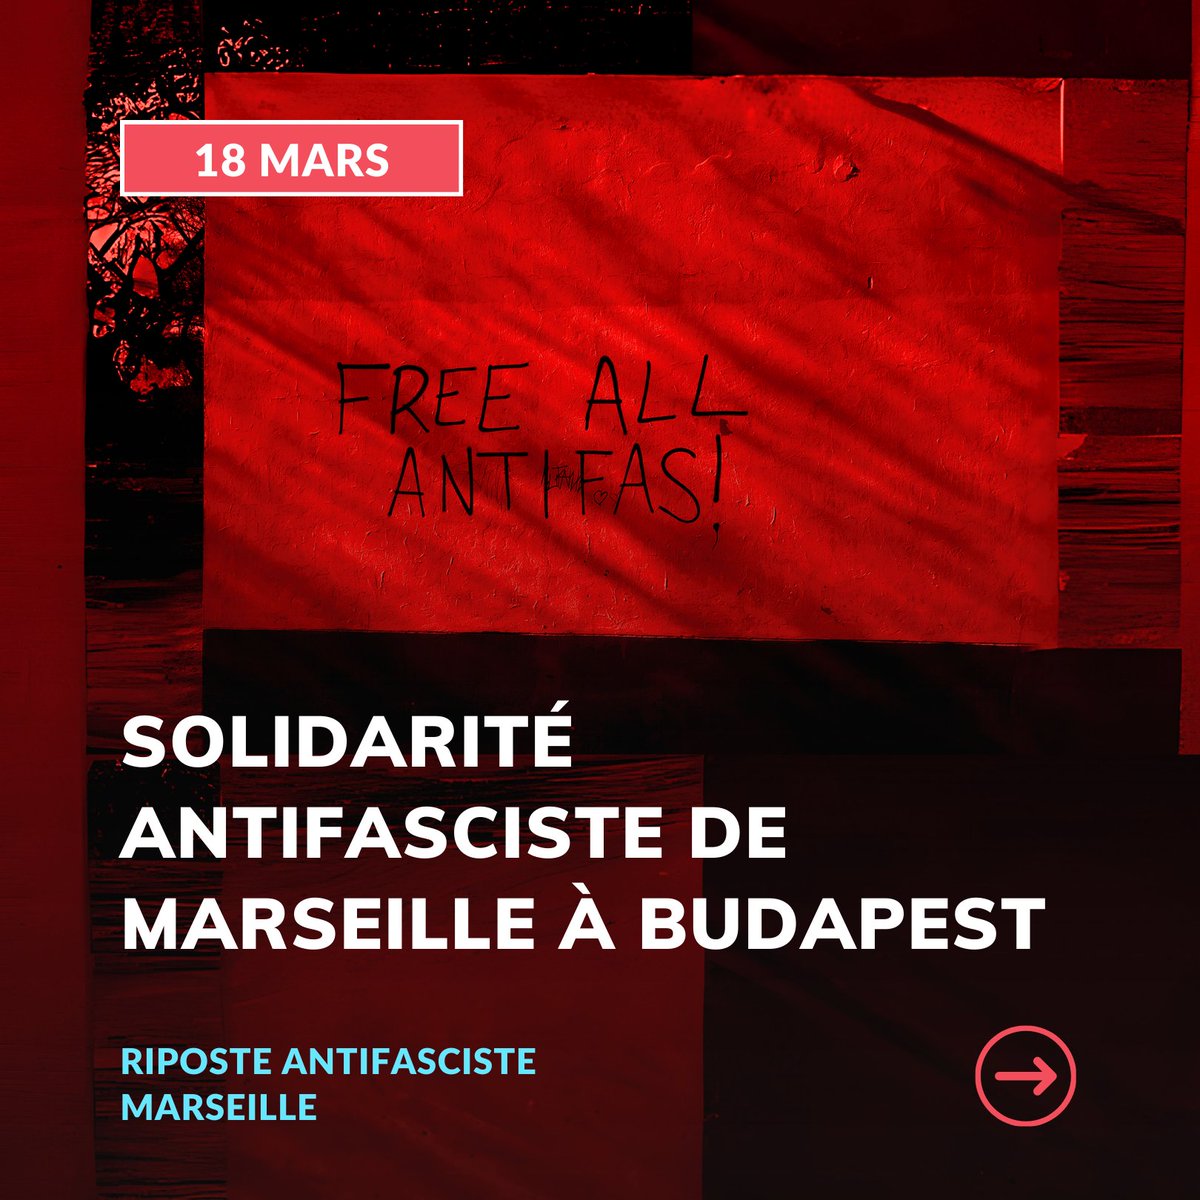 🔥 Solidarité avec tous·tes les antifascistes incarcéré·es, recherché·es, et frappé·es par la répression ! Marseille vous envoie de la force !

#FreeAllAntifas
#FreeTheBudapestTwo
#NoExtradition 

1/